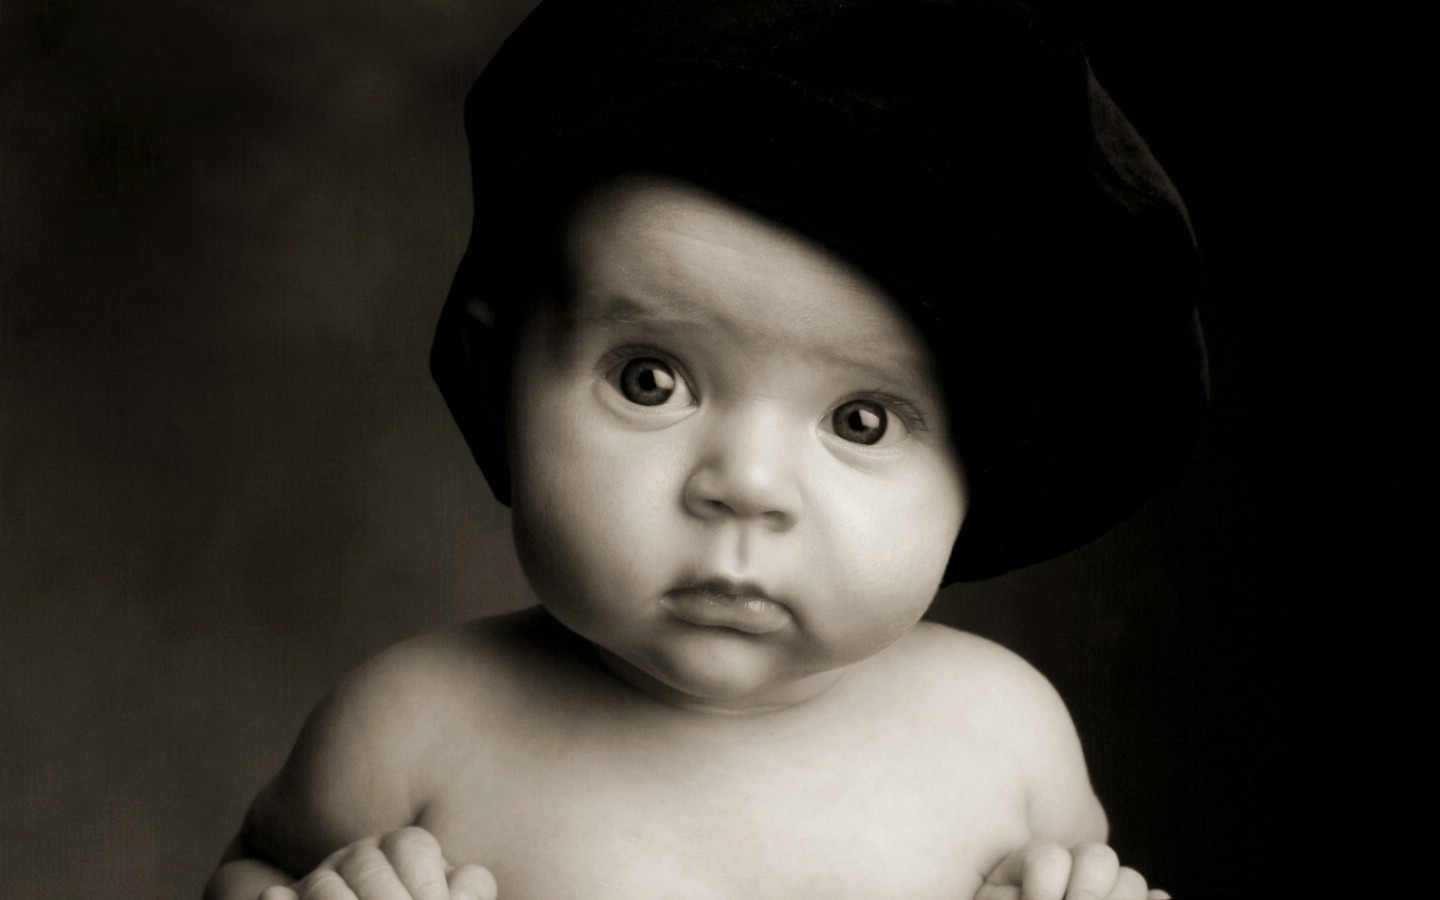 壁纸1600×1200黑白婴儿摄影 睡眠中的微笑图片壁纸壁纸,爱与纯真-可爱婴儿儿童摄影壁纸壁纸图片-摄影壁纸-摄影图片素材-桌面壁纸